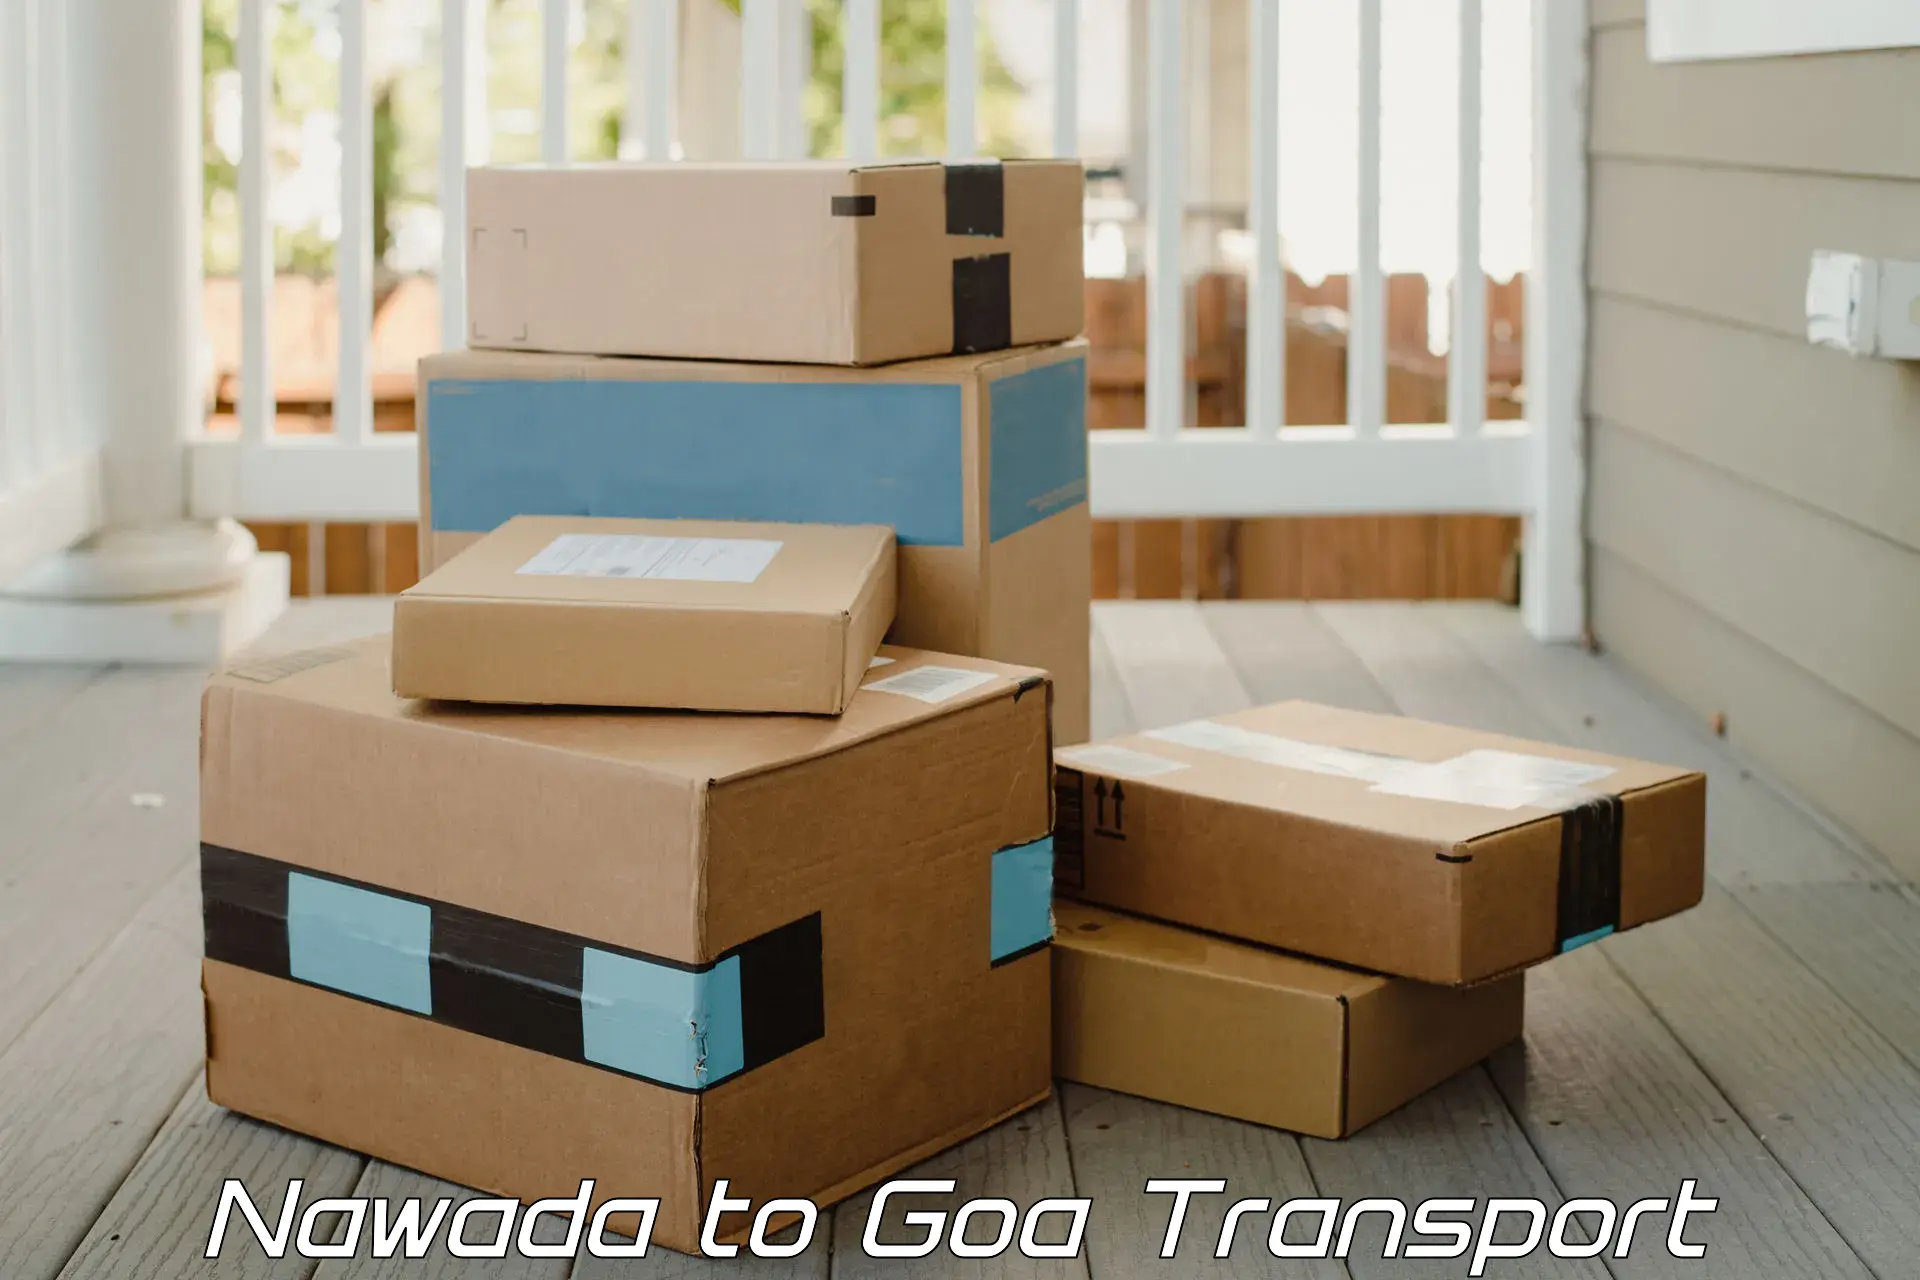 Lorry transport service Nawada to Canacona